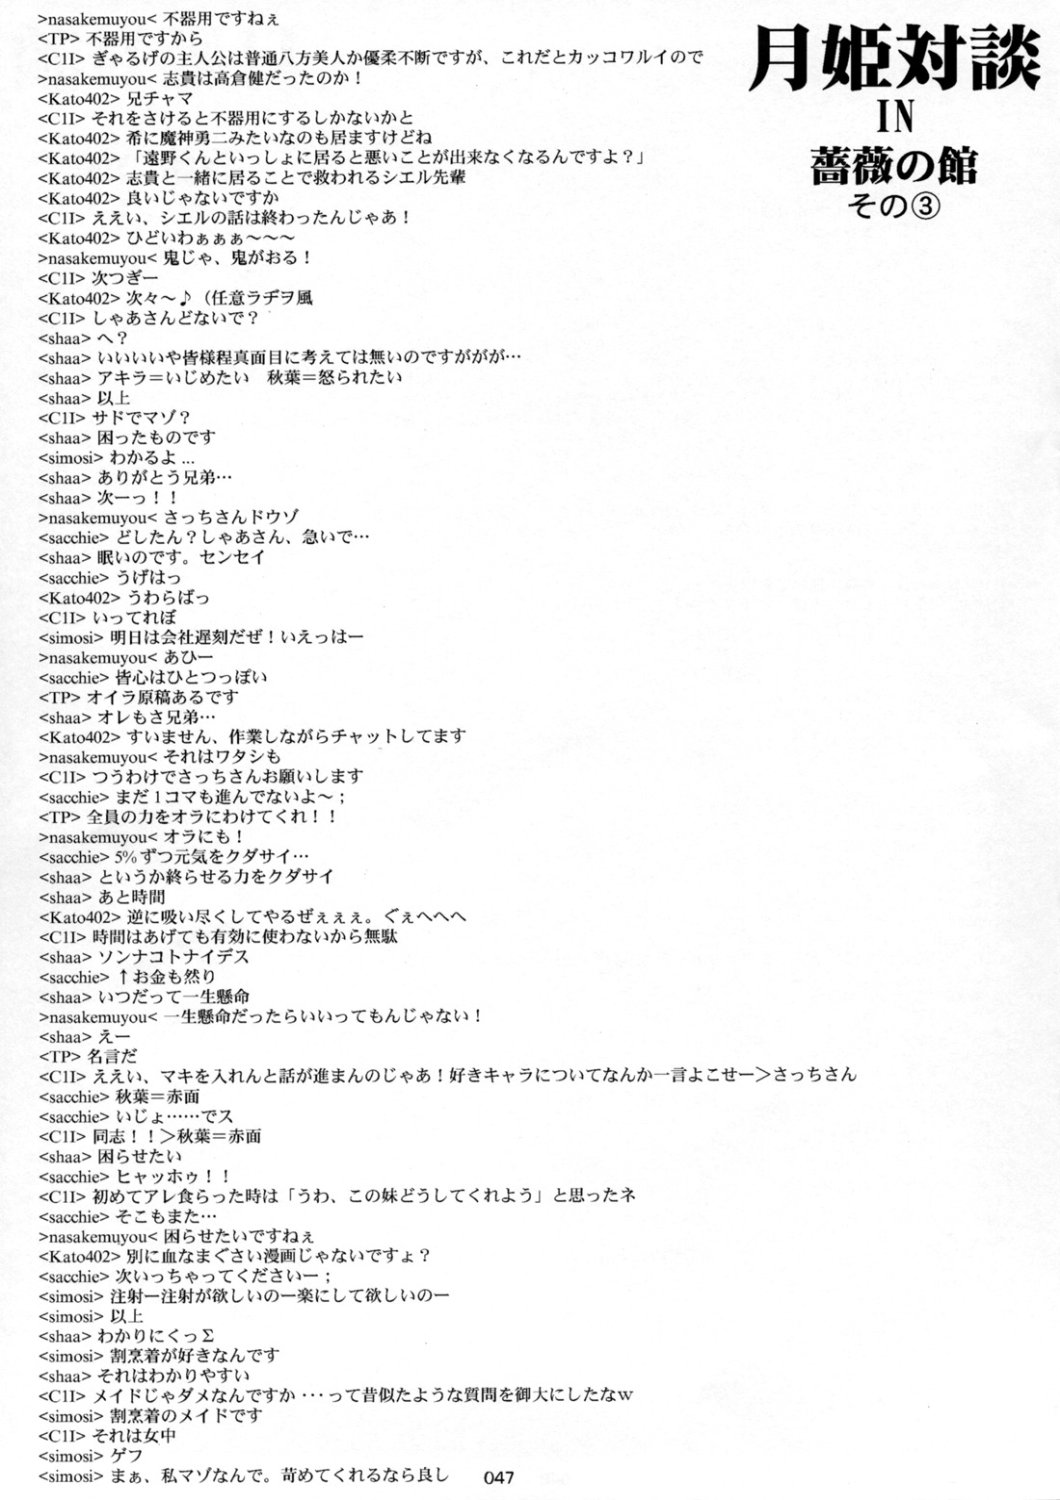 [Inochi no Furusato, Neko-bus Tei, Zangyaku Koui Teate] Akihamania [AKIHA MANIACS] (Tsukihime) page 46 full